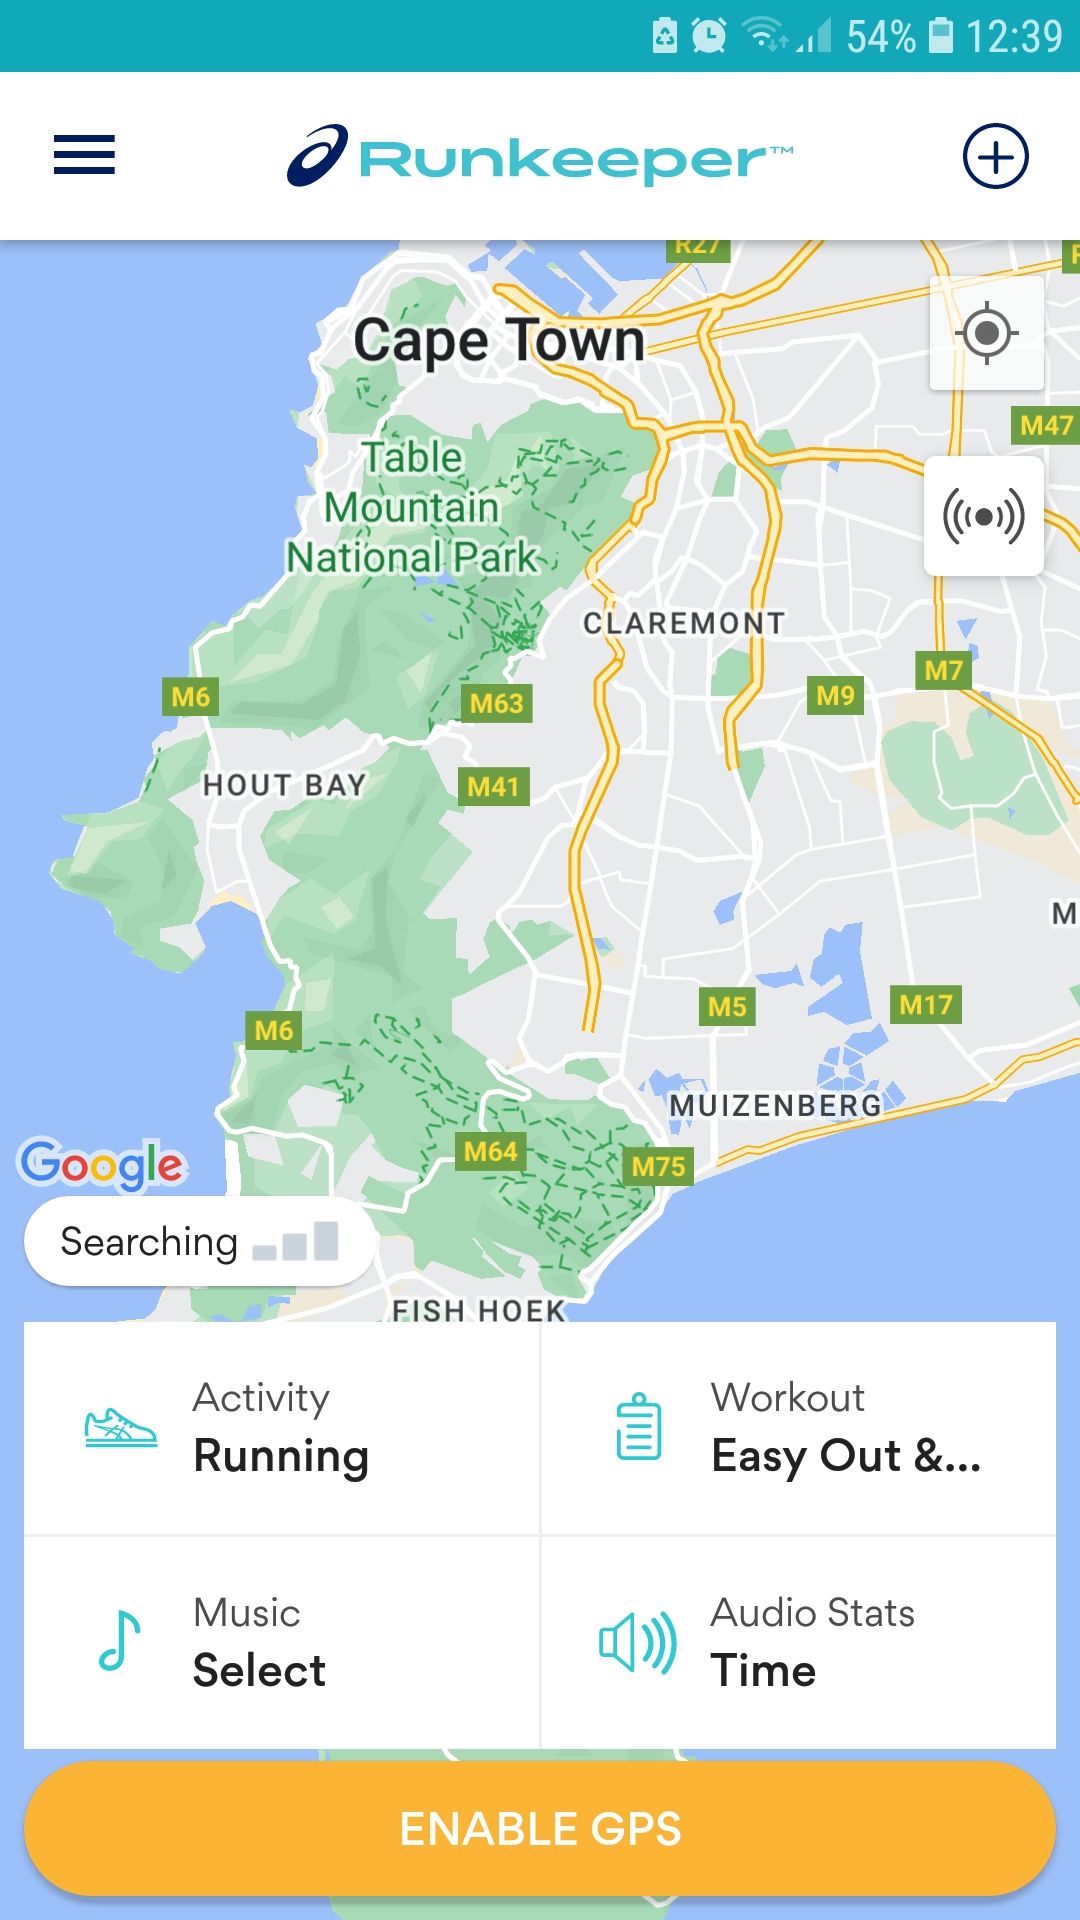 ASICS Runkeeper running tracker mobile app map